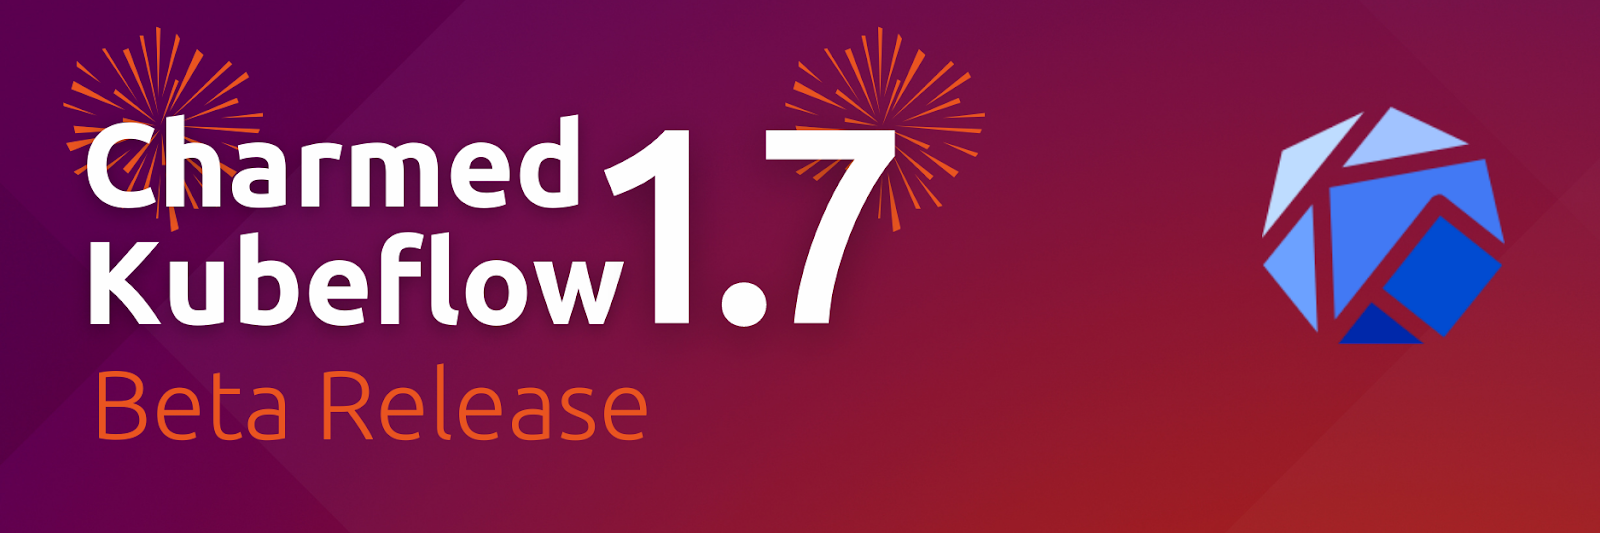 Kubeflow 1.7 Beta